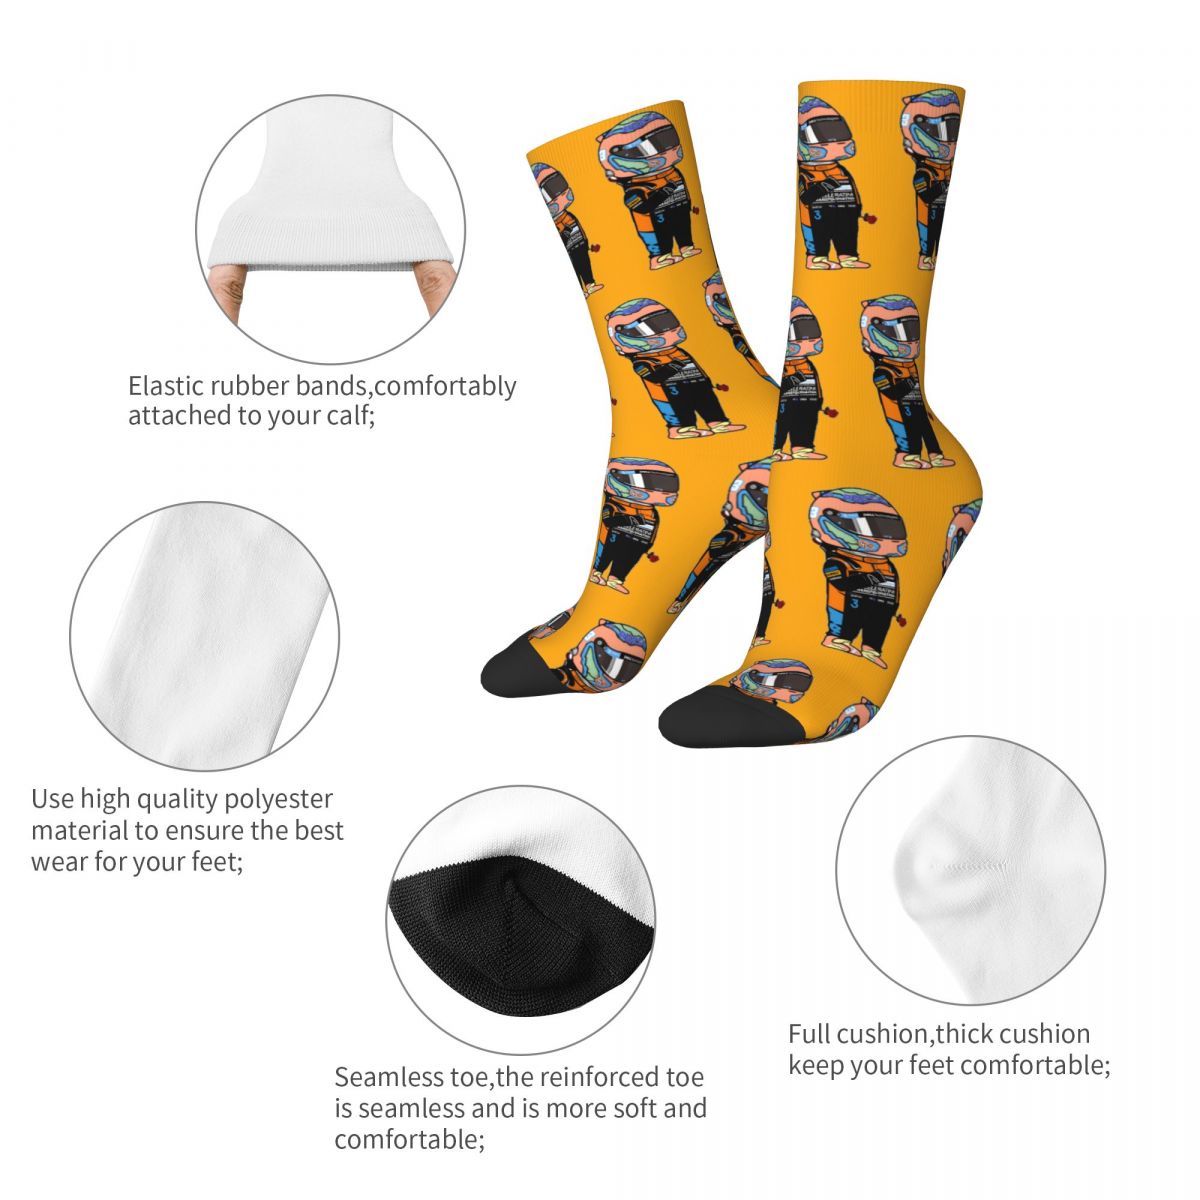 F1 Mclaren Era Daniel Ricciardo 3 Unisex Socks Great Gift Fan Merchandise